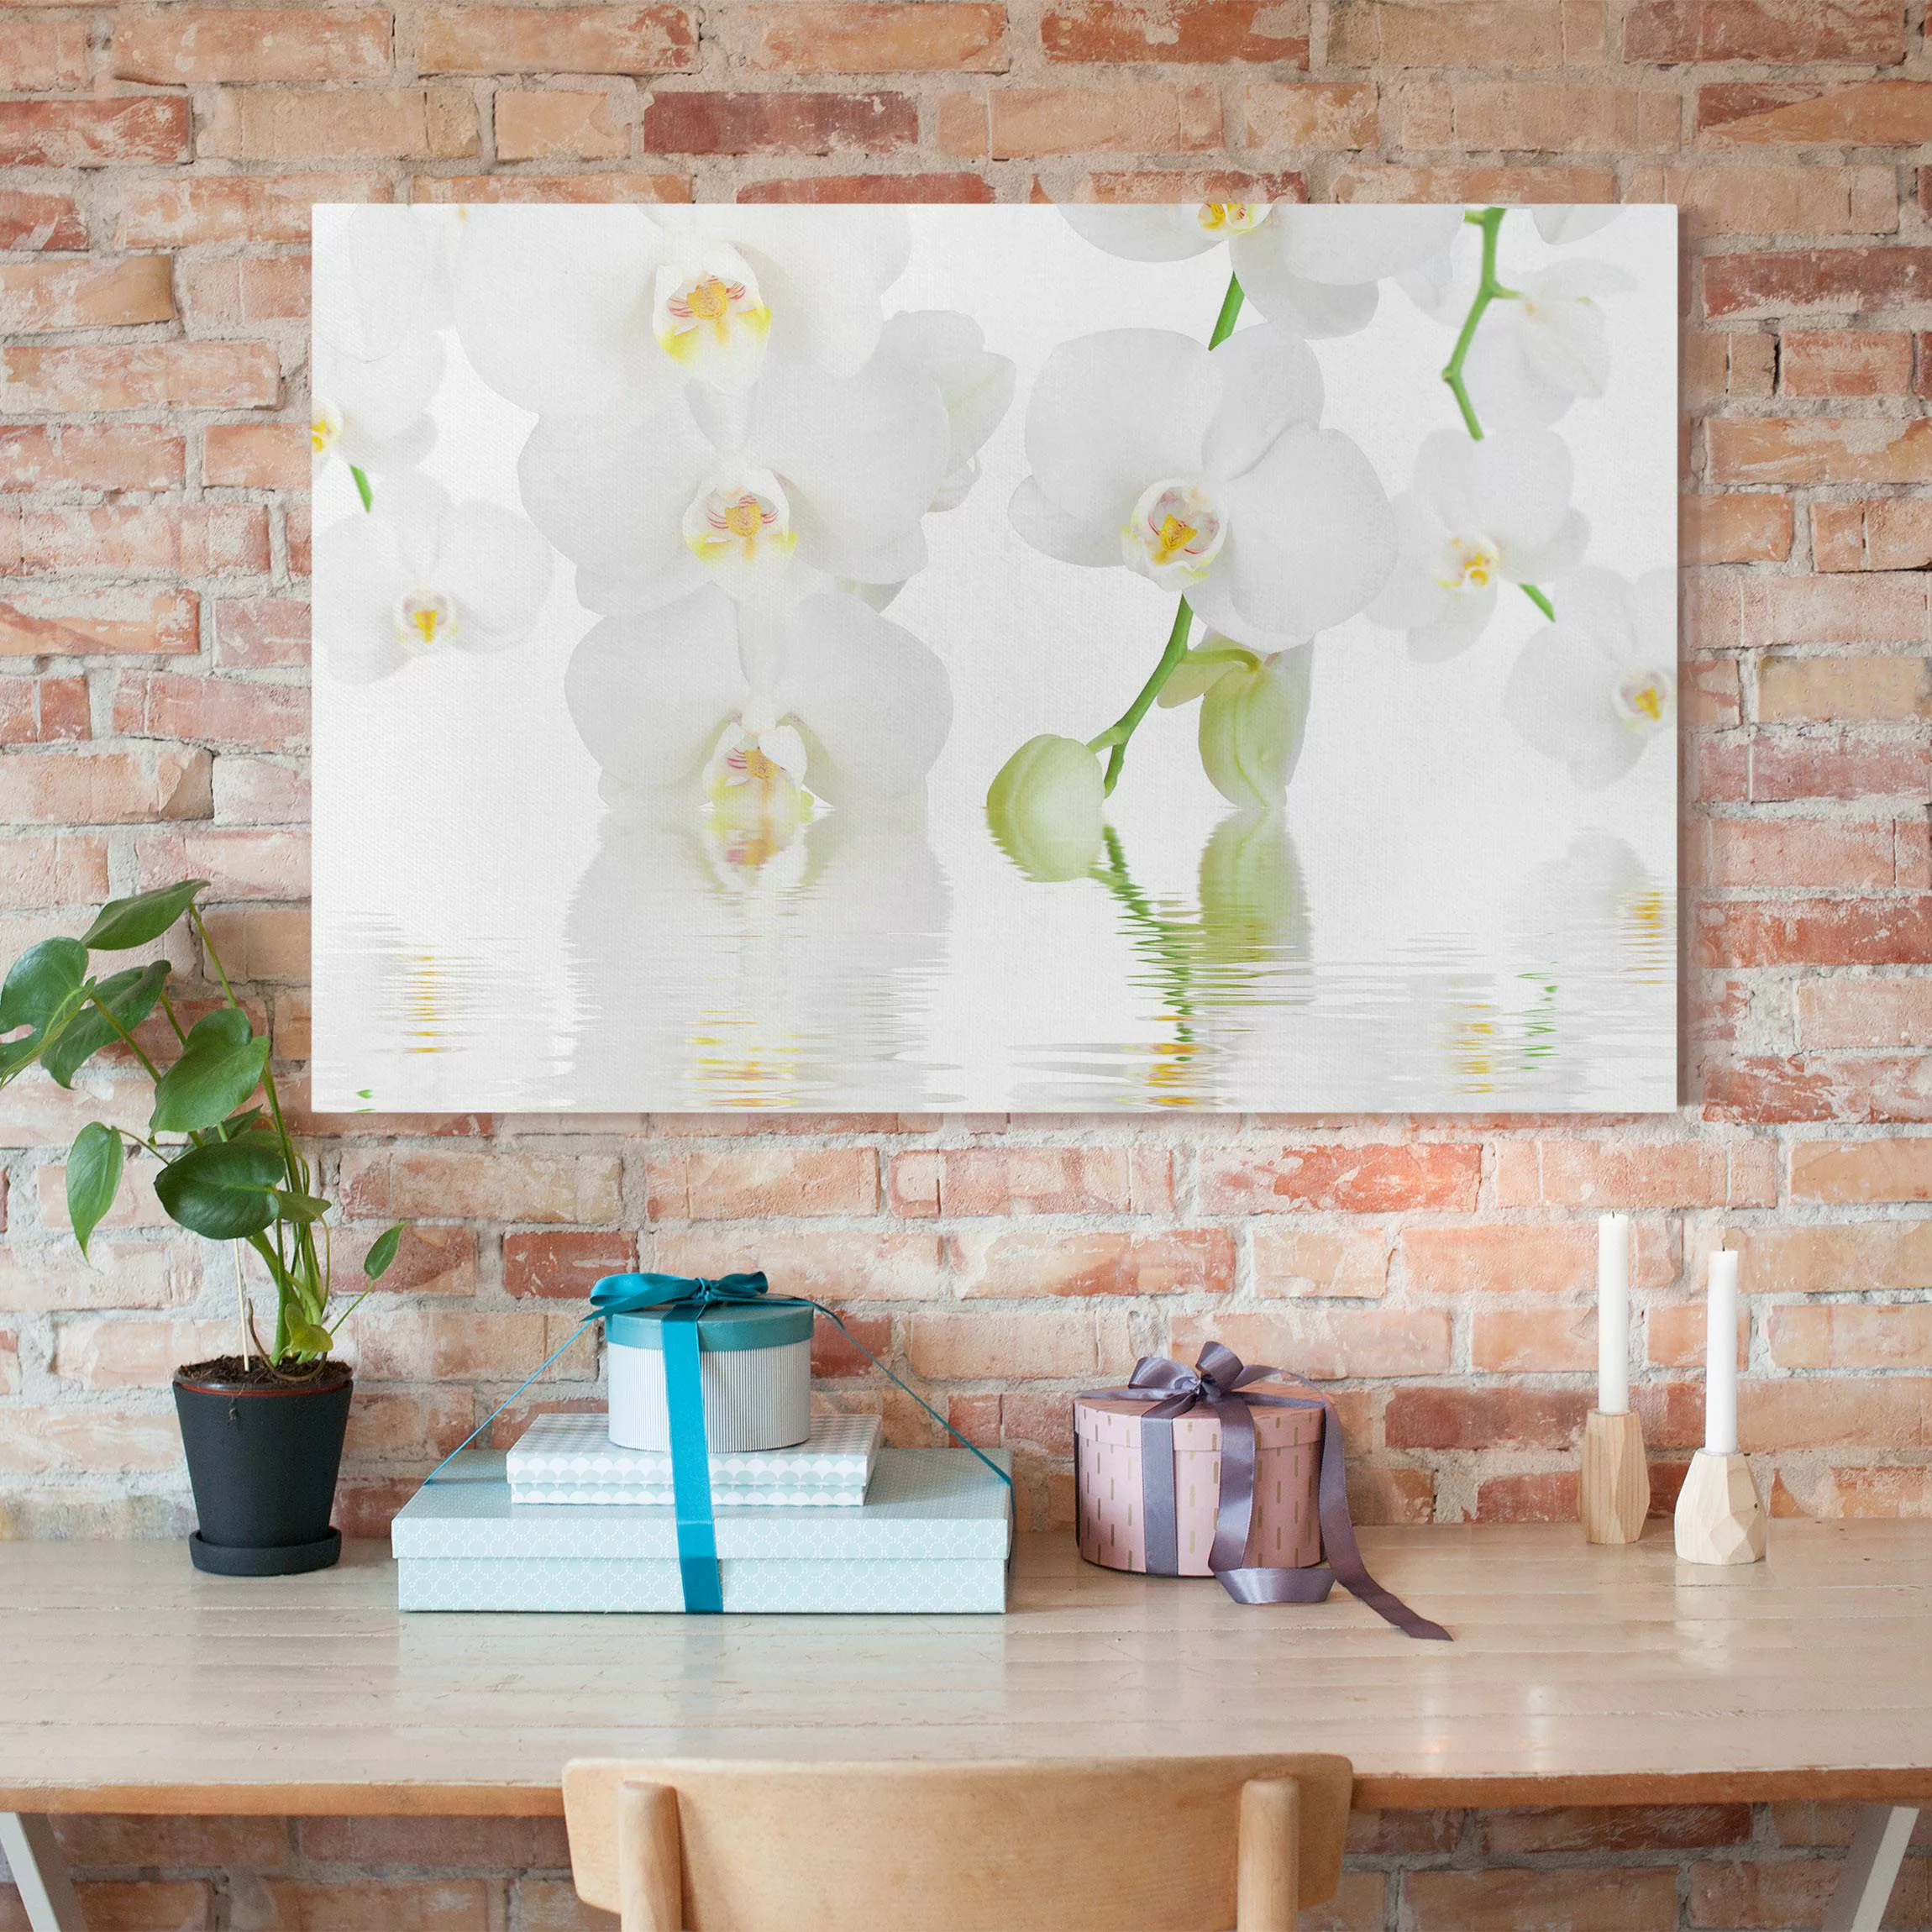 Leinwandbild Blumen - Querformat Wellness Orchidee - Weiße Orchidee günstig online kaufen